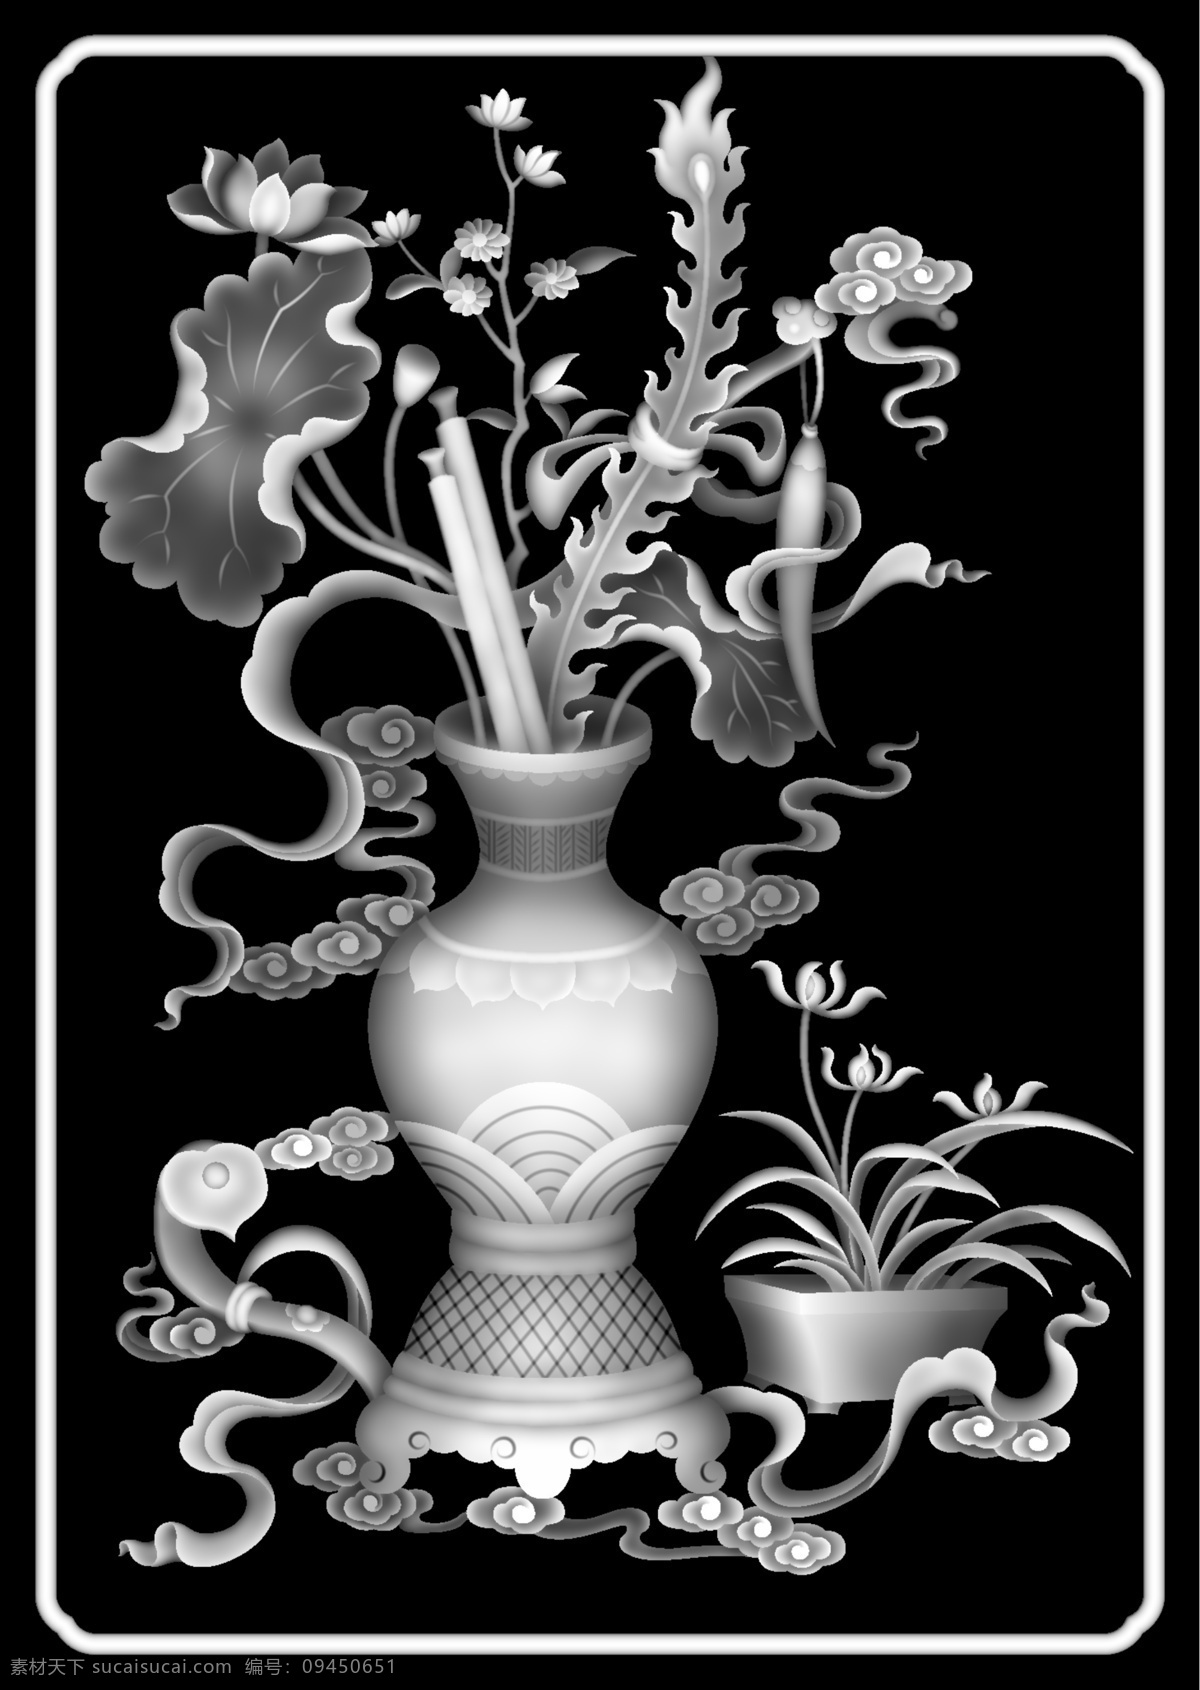 花瓶 荷花 灰度 图 浮雕灰度图 精雕 花瓶荷花 bmp 雕刻灰度图 传统文化 文化艺术 灰度图 浮雕图 雕刻